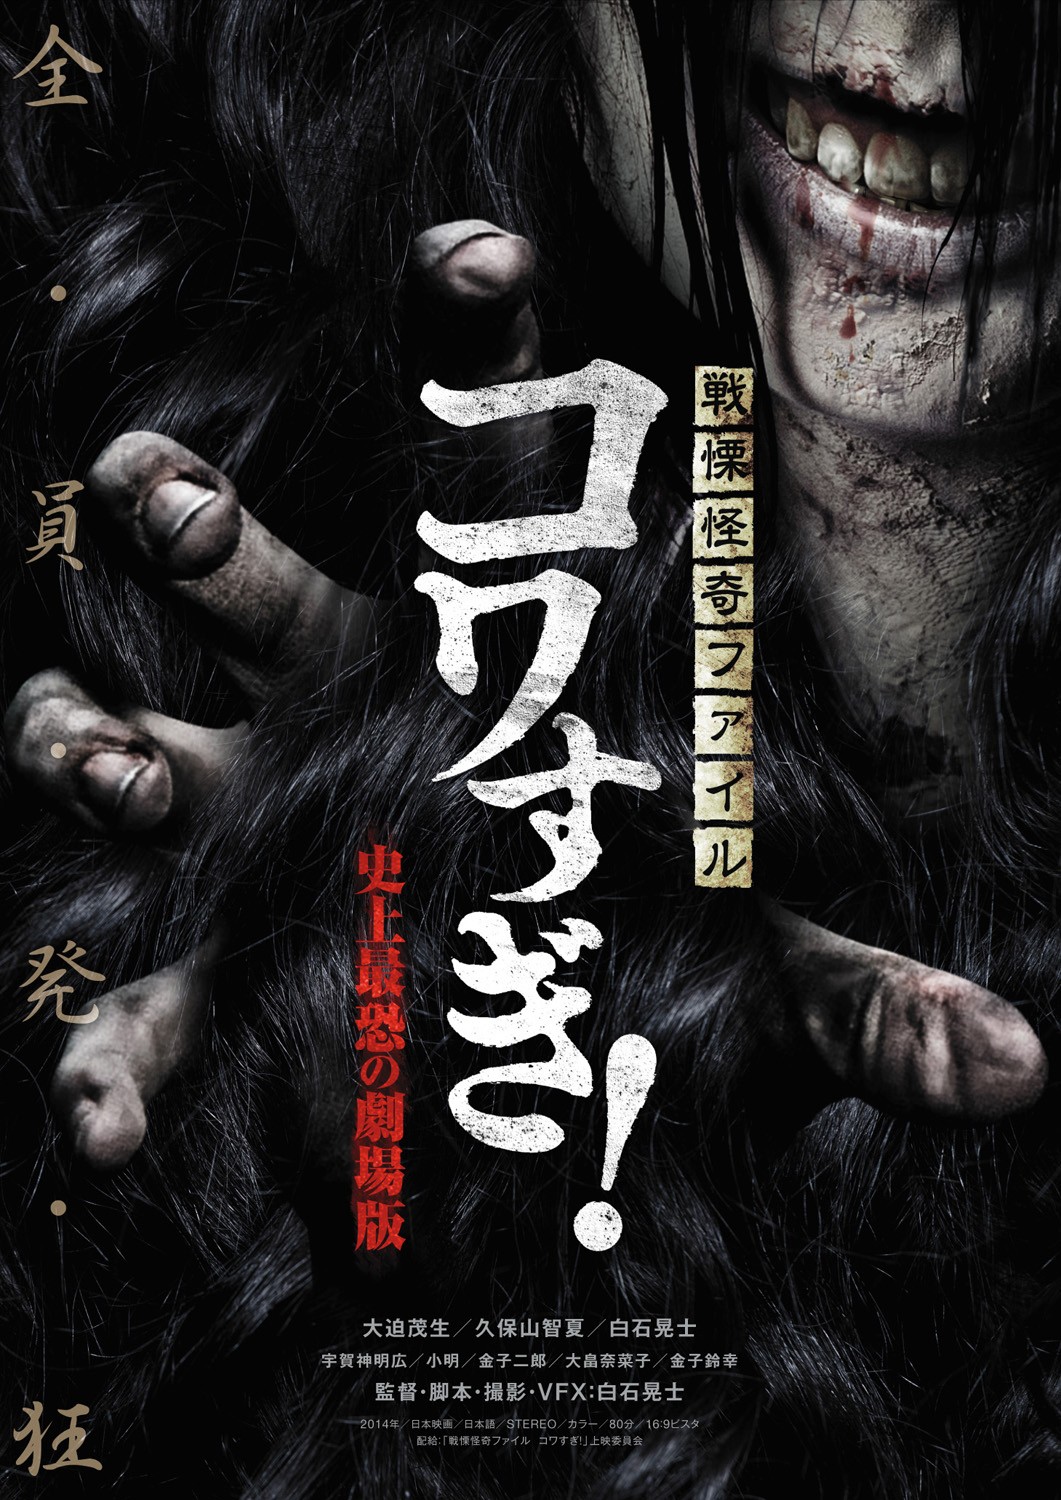 Extra Large Movie Poster Image for Senritsu Kaiki File Kowasugi 